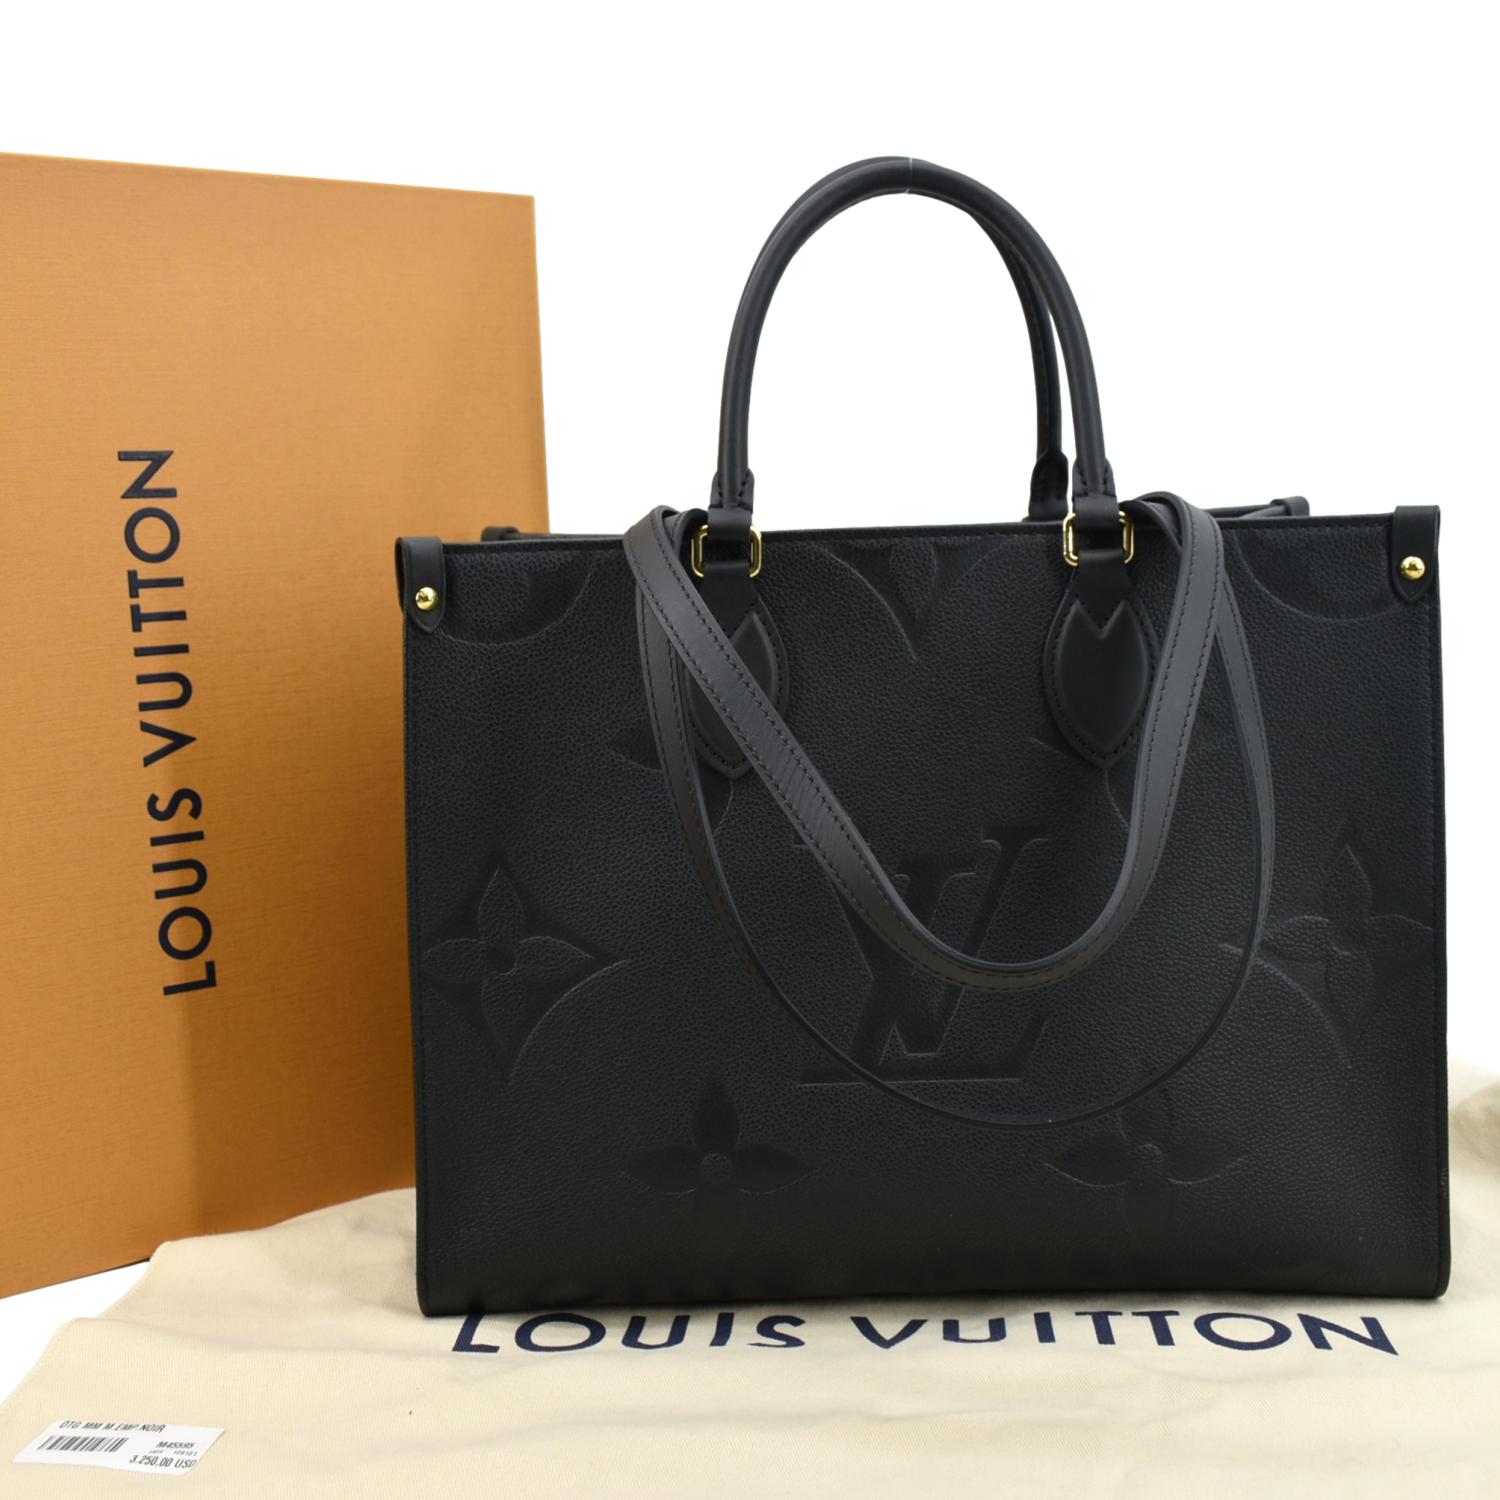 Louis Vuitton Empreinte Monogram Giant Neverfull